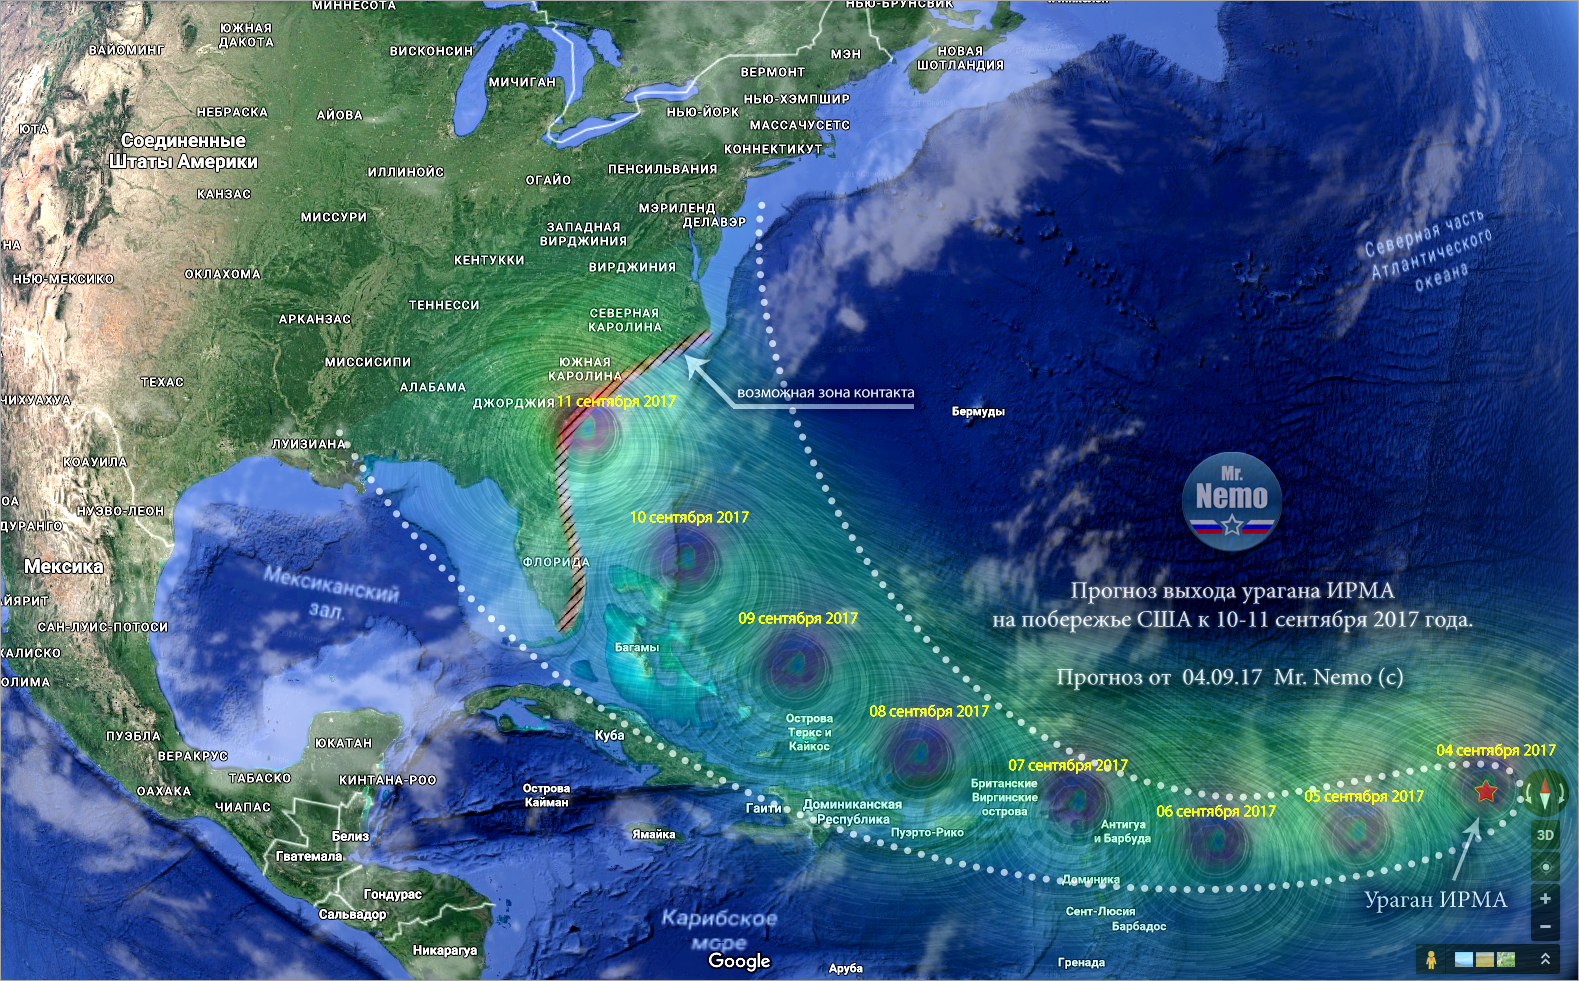 Прогноз расчетной траектории выхода сокрушительного урагана Ирма на восточн ...